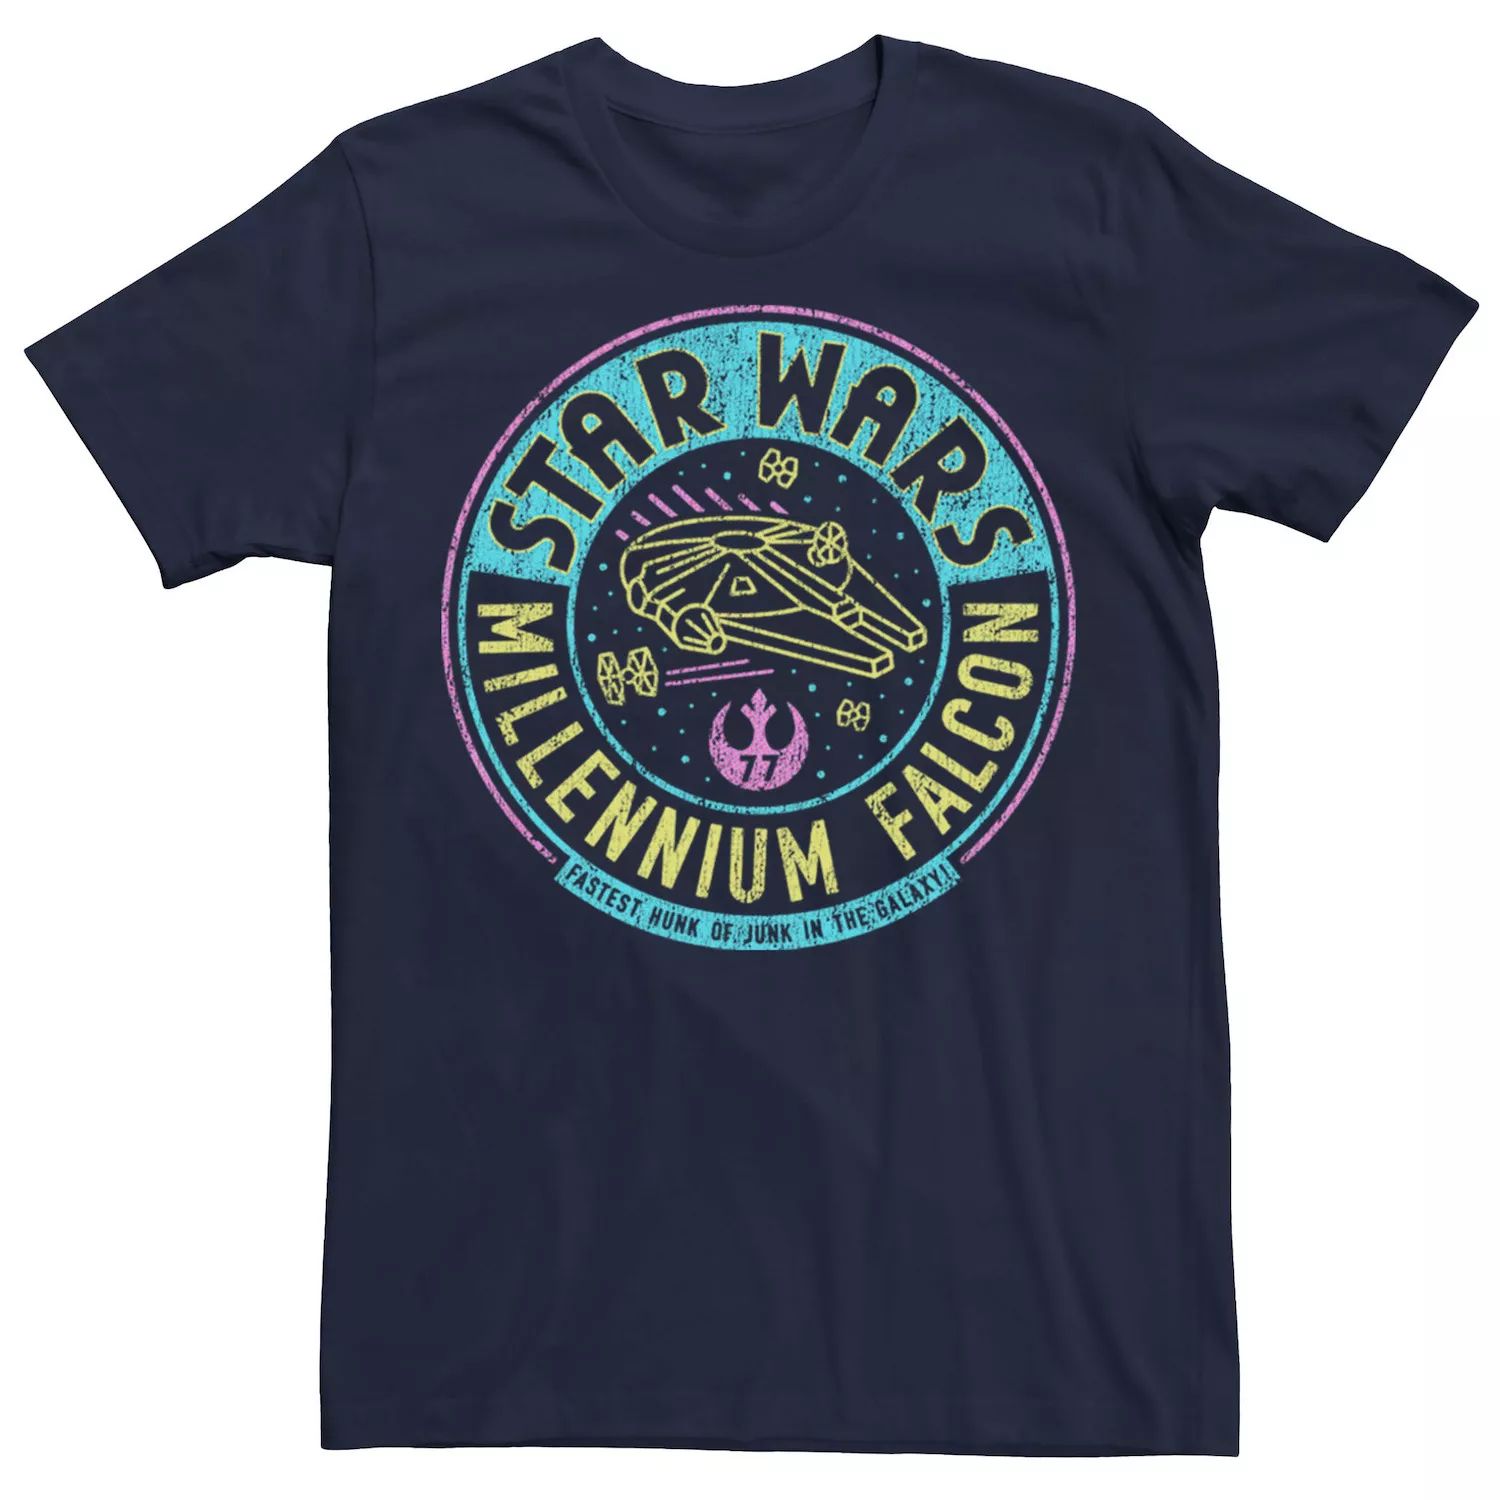 Мужская футболка с неоновым буквенным логотипом «Звездные войны: Сокол тысячелетия», Синяя Star Wars, синий мужская футболка с логотипом комиксов звездные войны сокол тысячелетия star wars